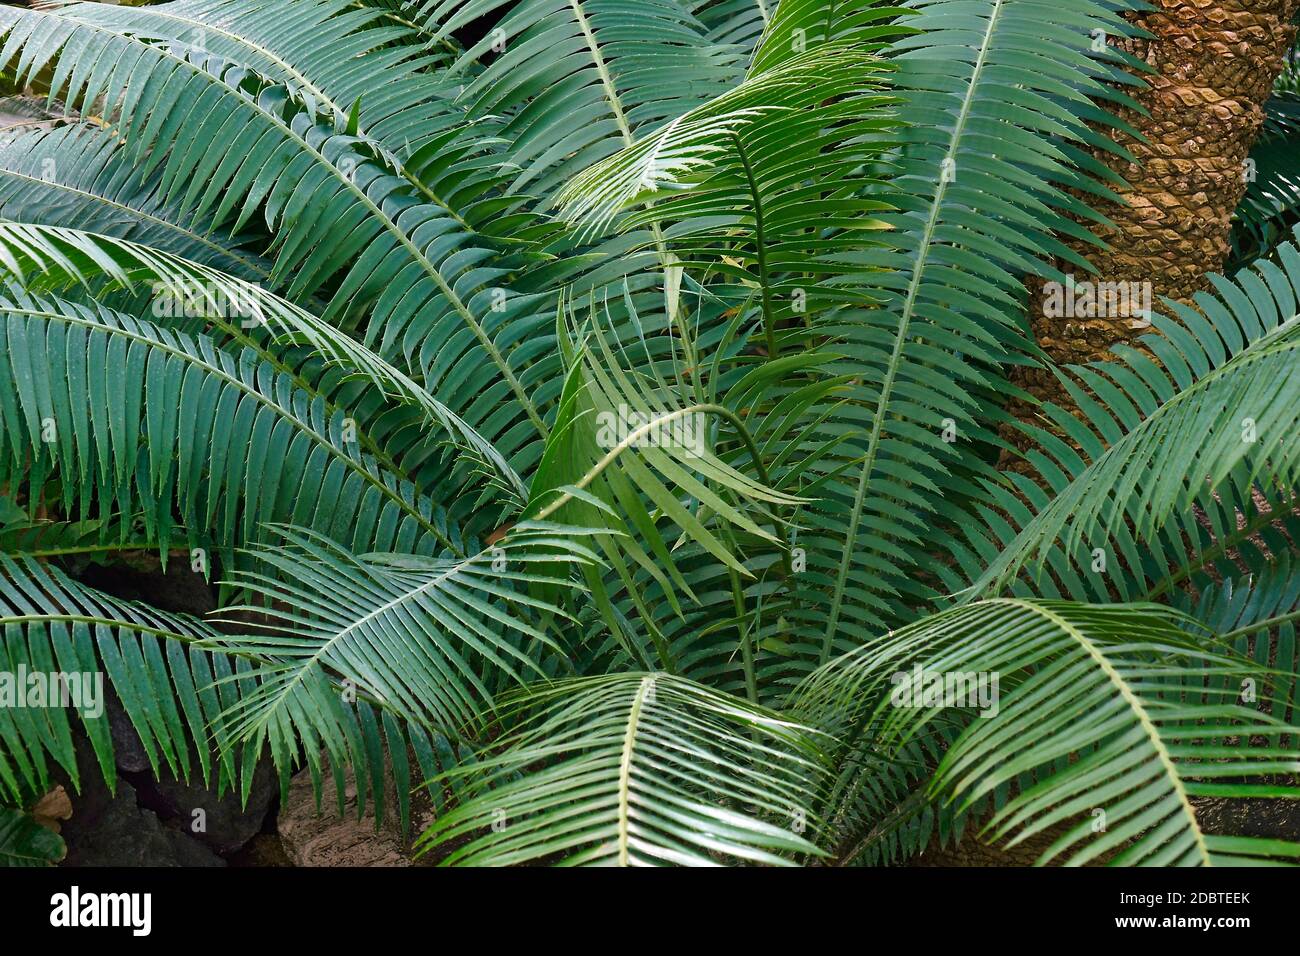 Dioon spinulosum dioon (Riese). Genannt Gummi Palm auch Stockfoto